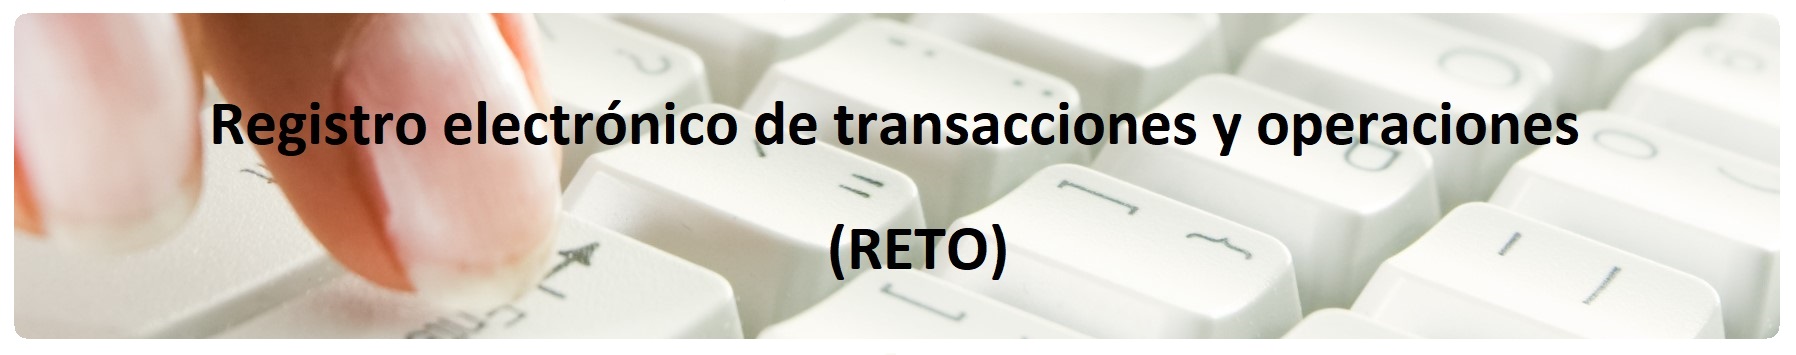 Enlace al Registro electrónico de transacciones y operaciones (RETO)